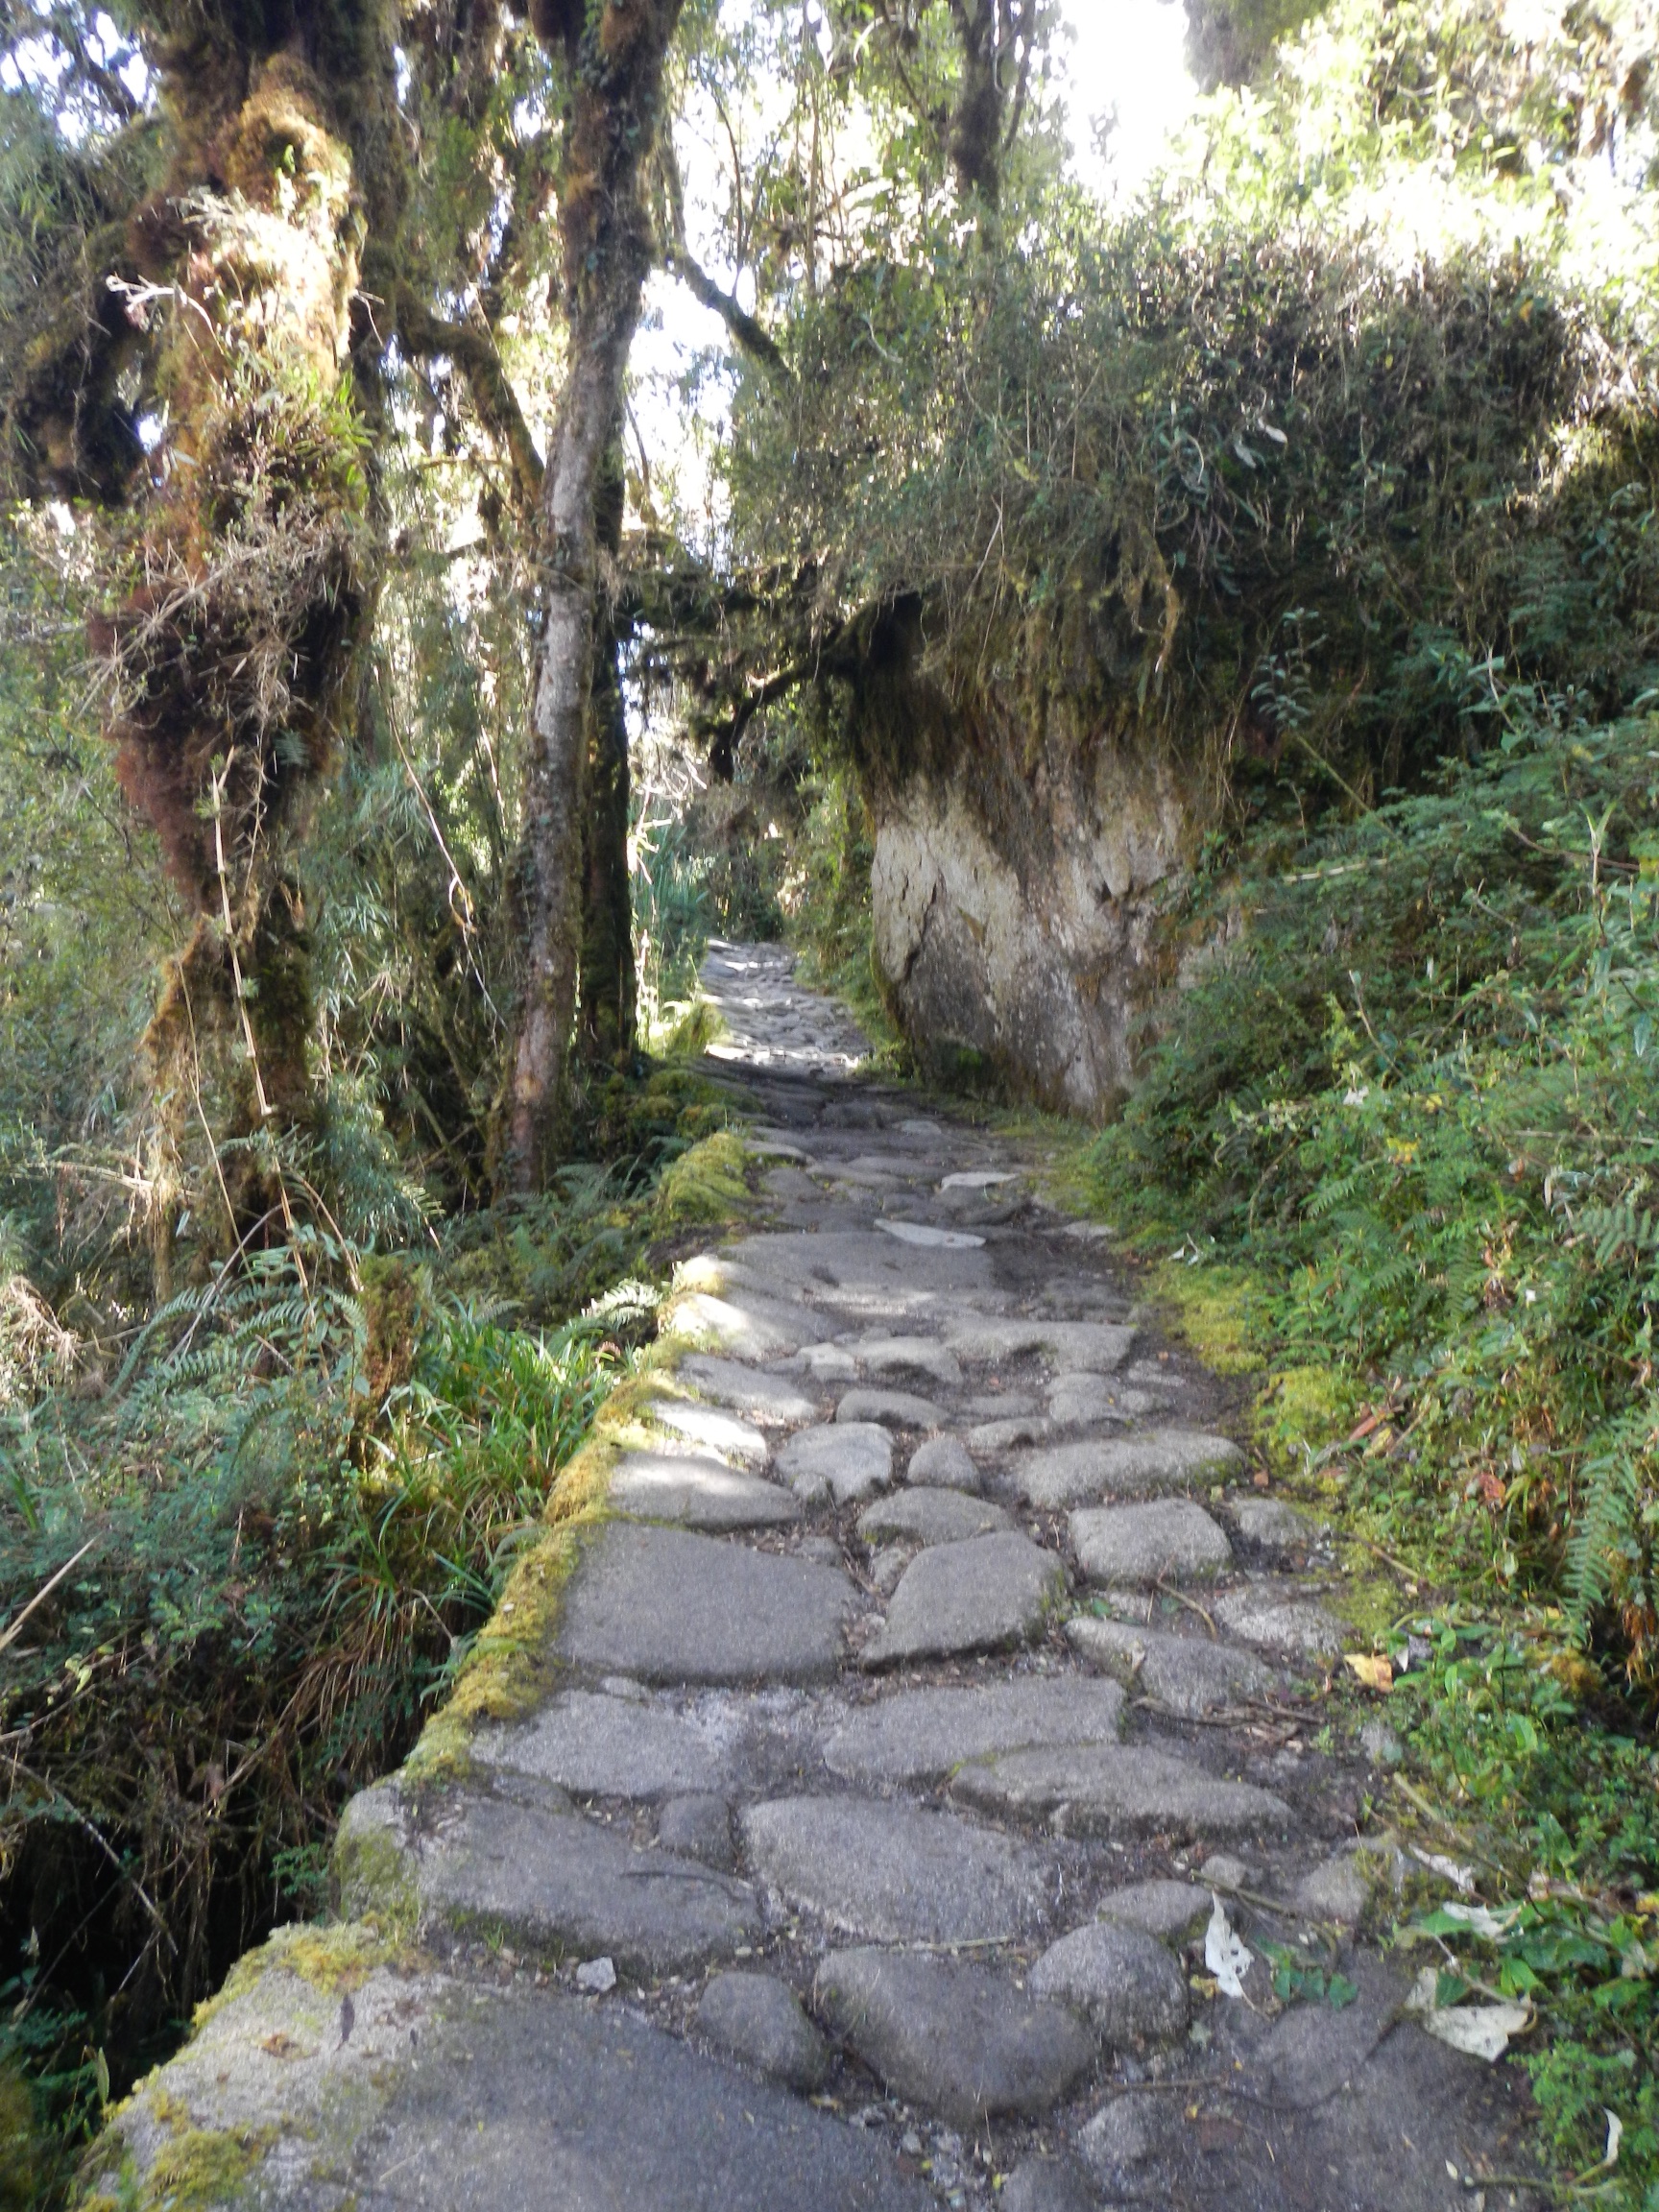  Jungle leading to Phuyupatamarka Pass, Inca Trail, Peru 